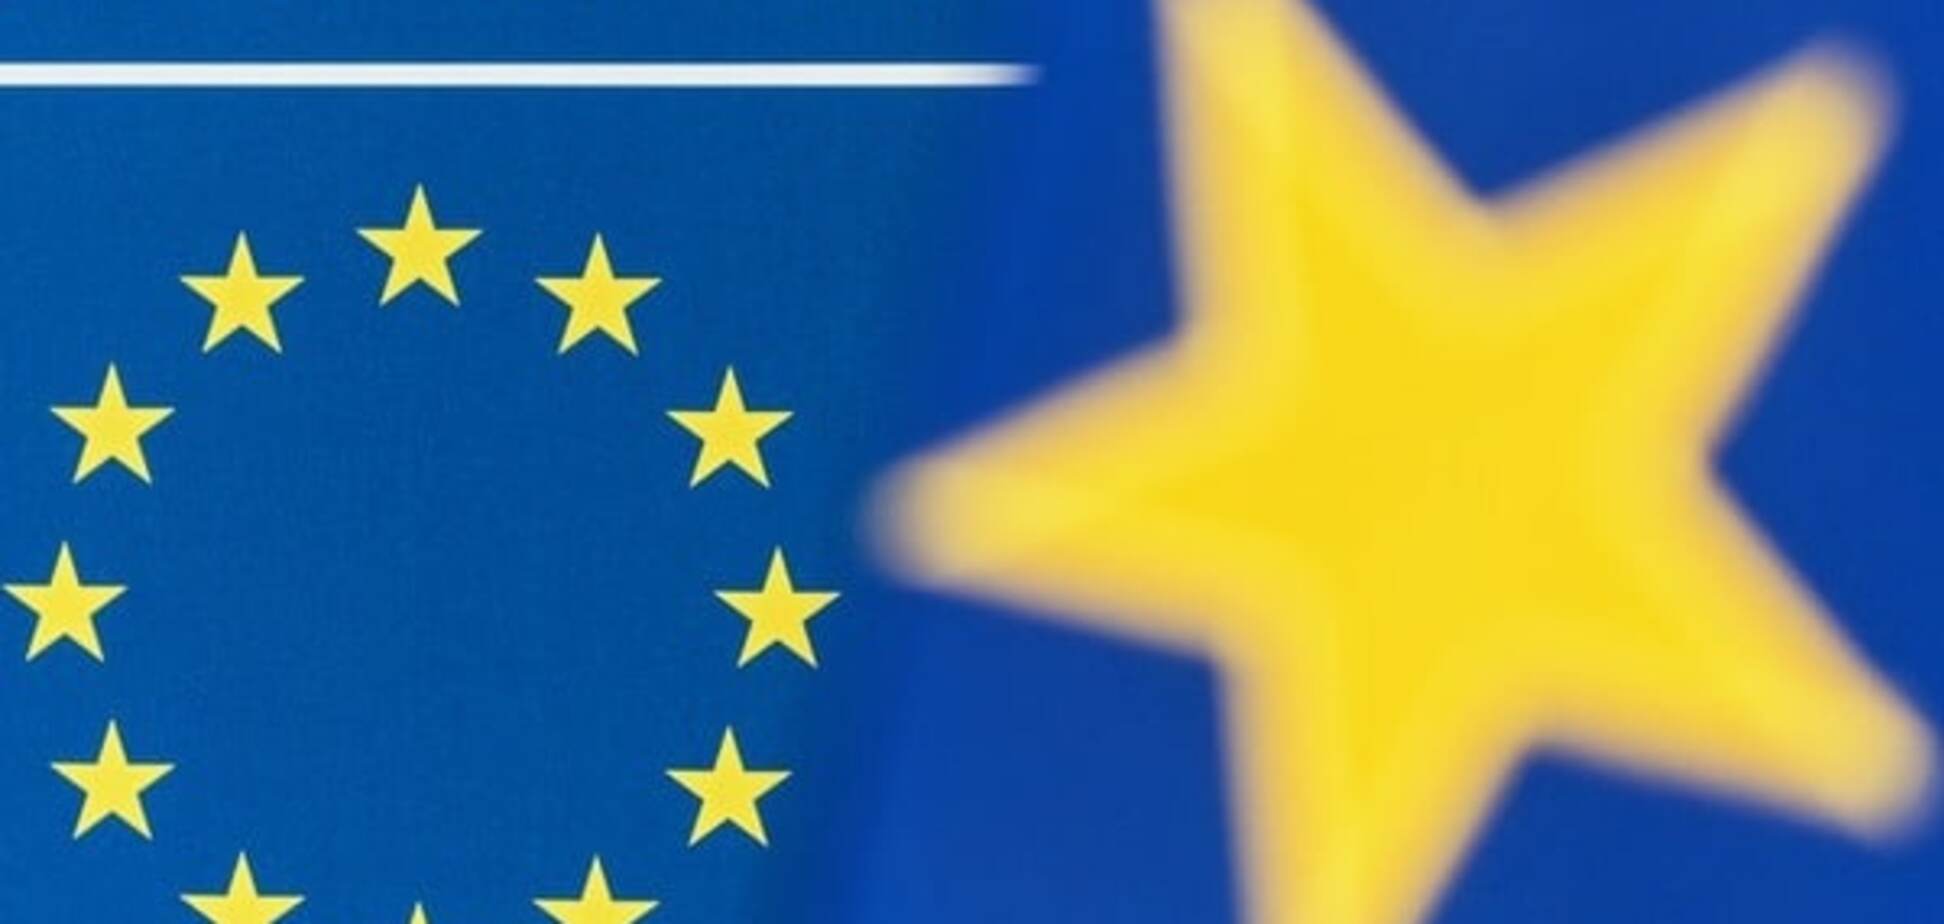 В ЕС активизировались противники соглашения об ассоциации с Украиной - депутат